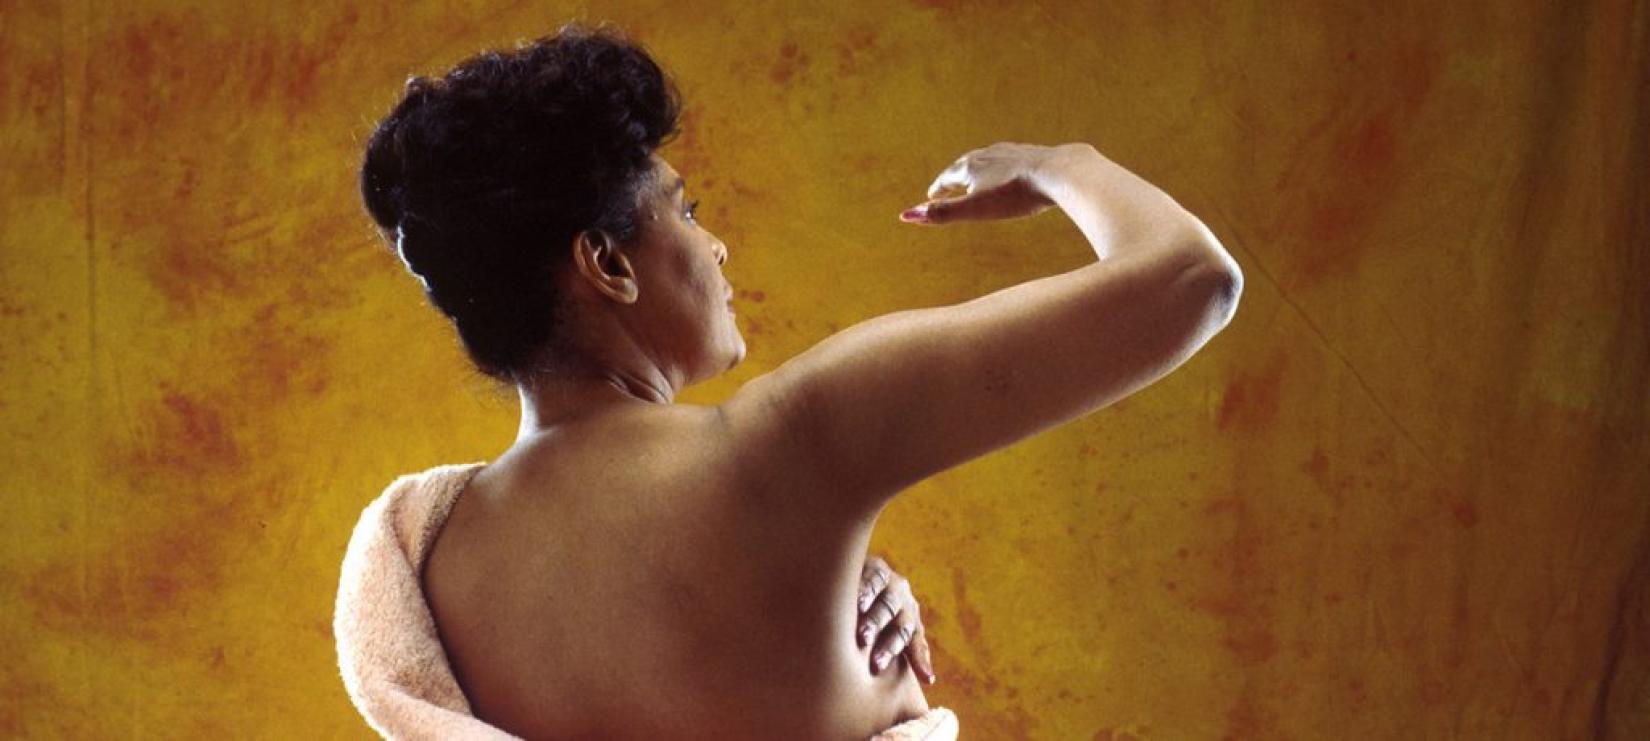 Mulher realiza autoexame preventivo de câncer de mama. Foto: National Cancer Institute/Bill Branson